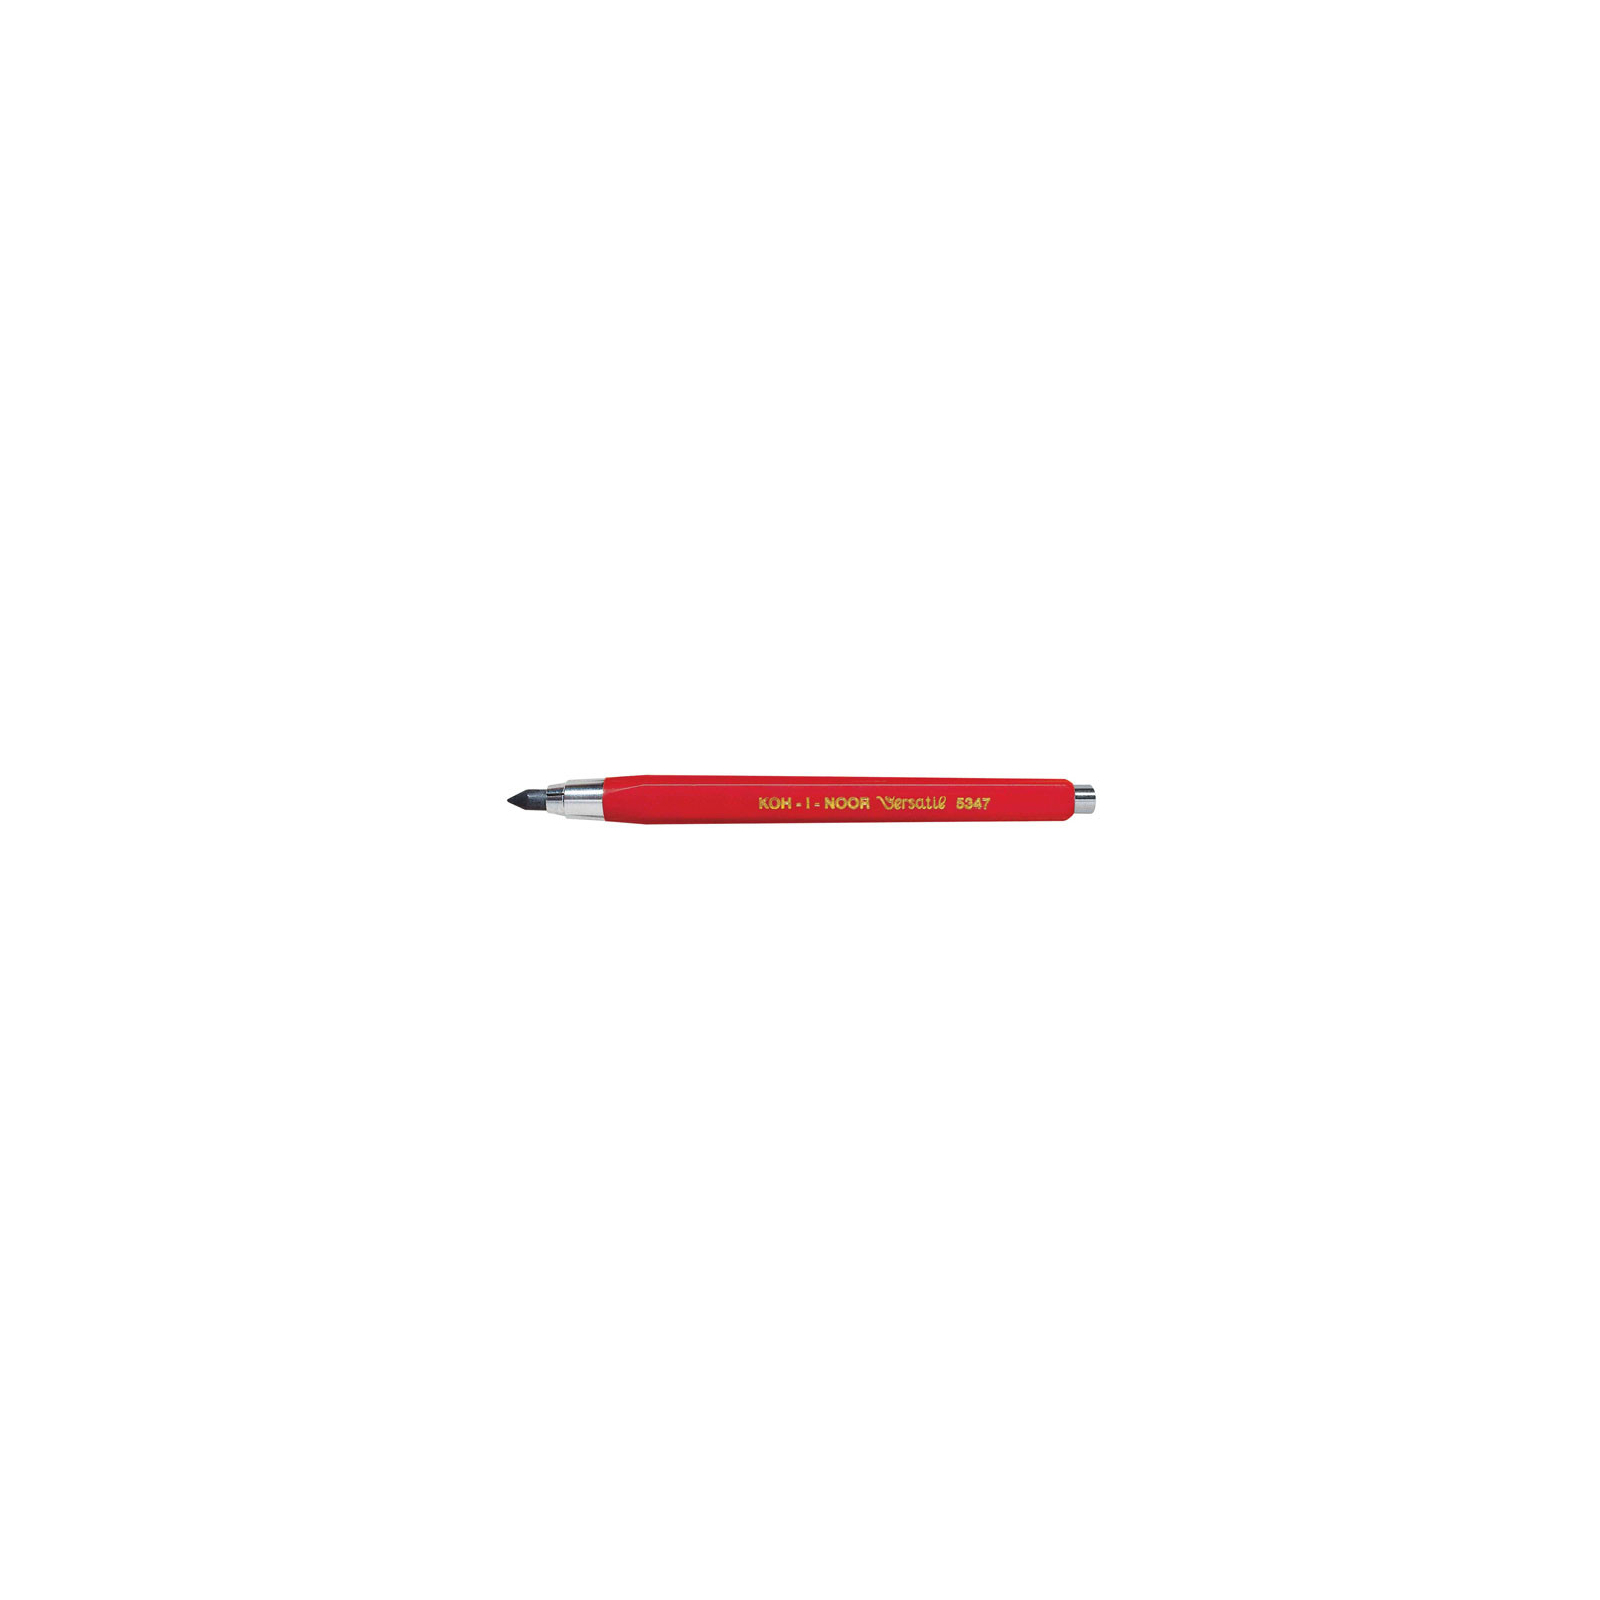 Олівець механічний Koh-i-Noor цангов. Versatil clutch leadholder 5,6 5347 red (5347)